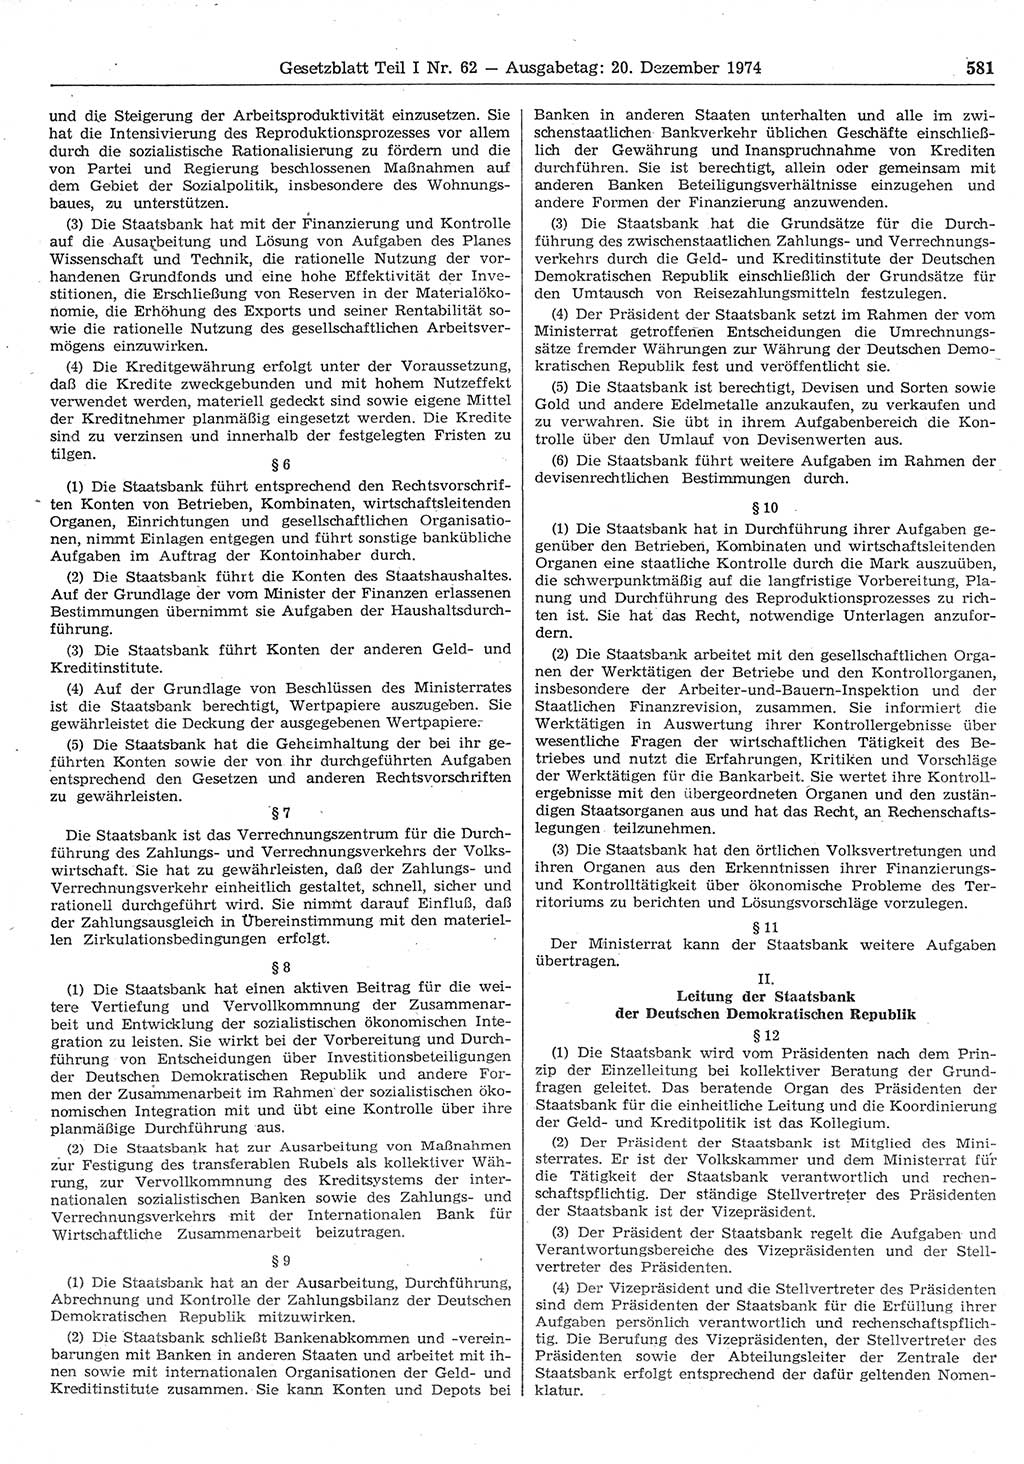 Gesetzblatt (GBl.) der Deutschen Demokratischen Republik (DDR) Teil Ⅰ 1974, Seite 581 (GBl. DDR Ⅰ 1974, S. 581)